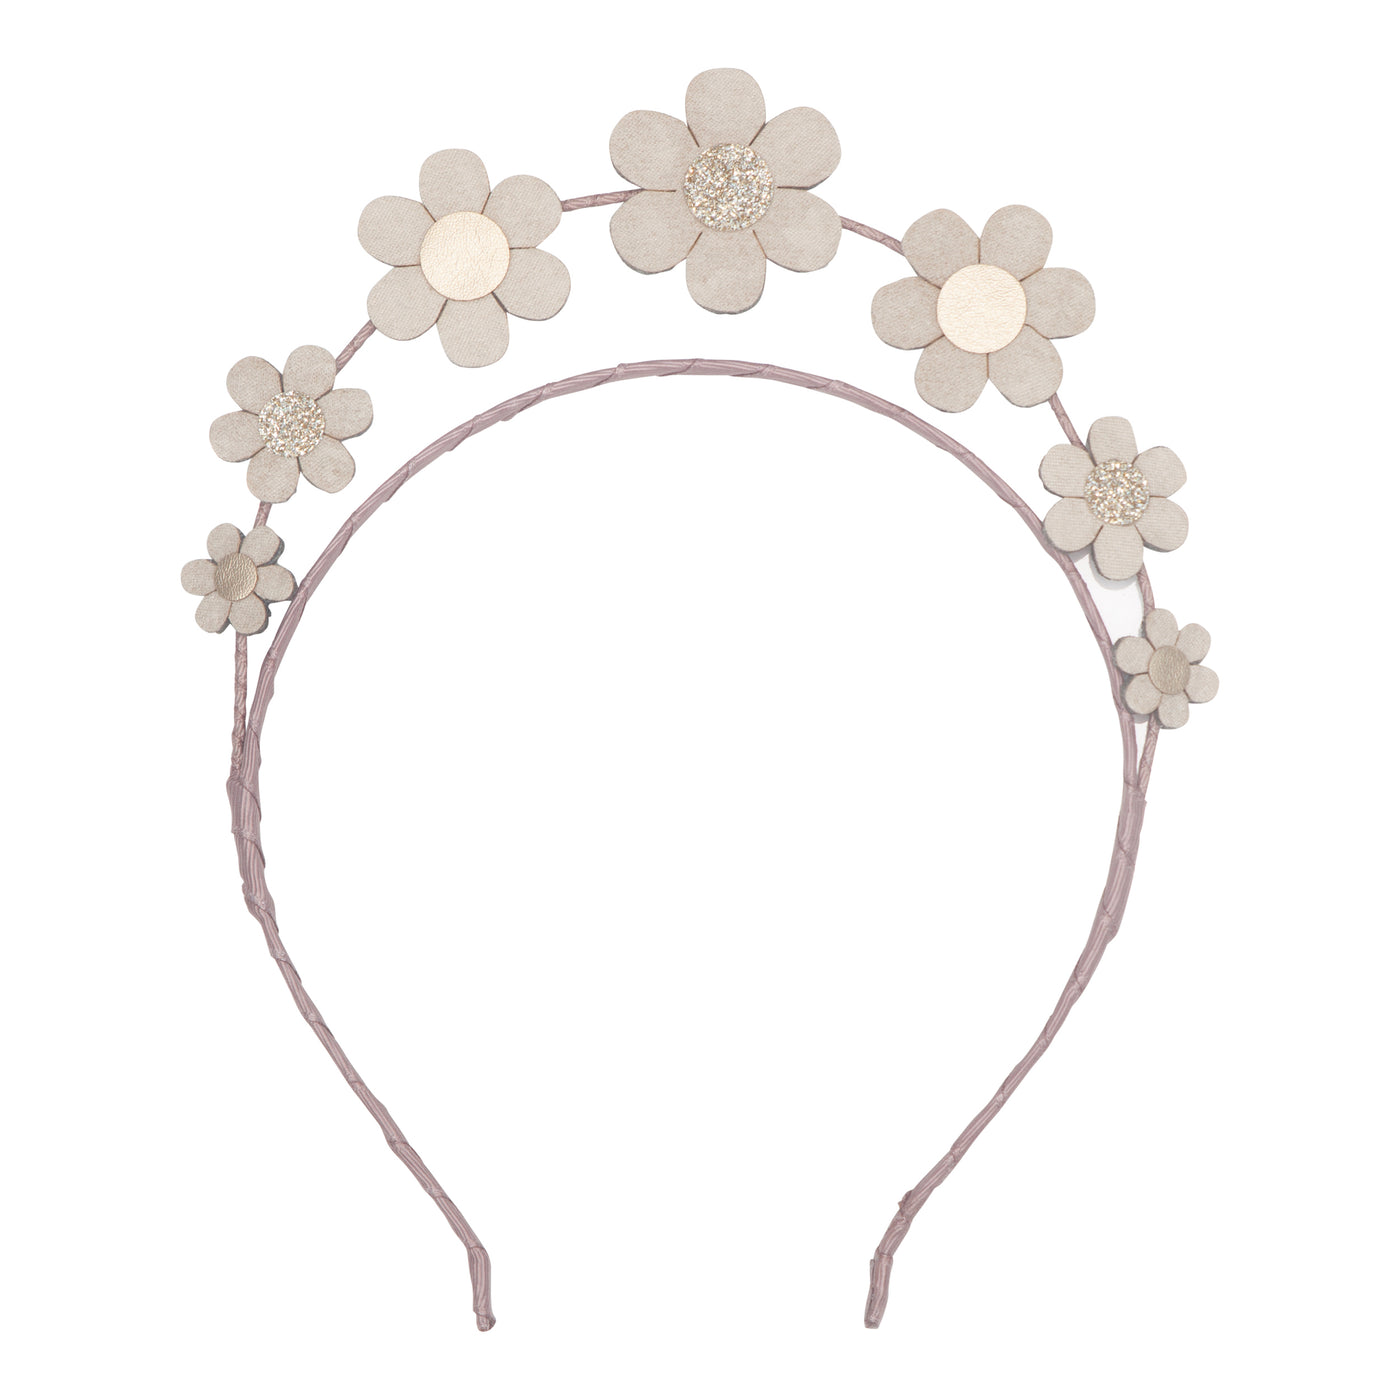 Daisy flower headdress for girls